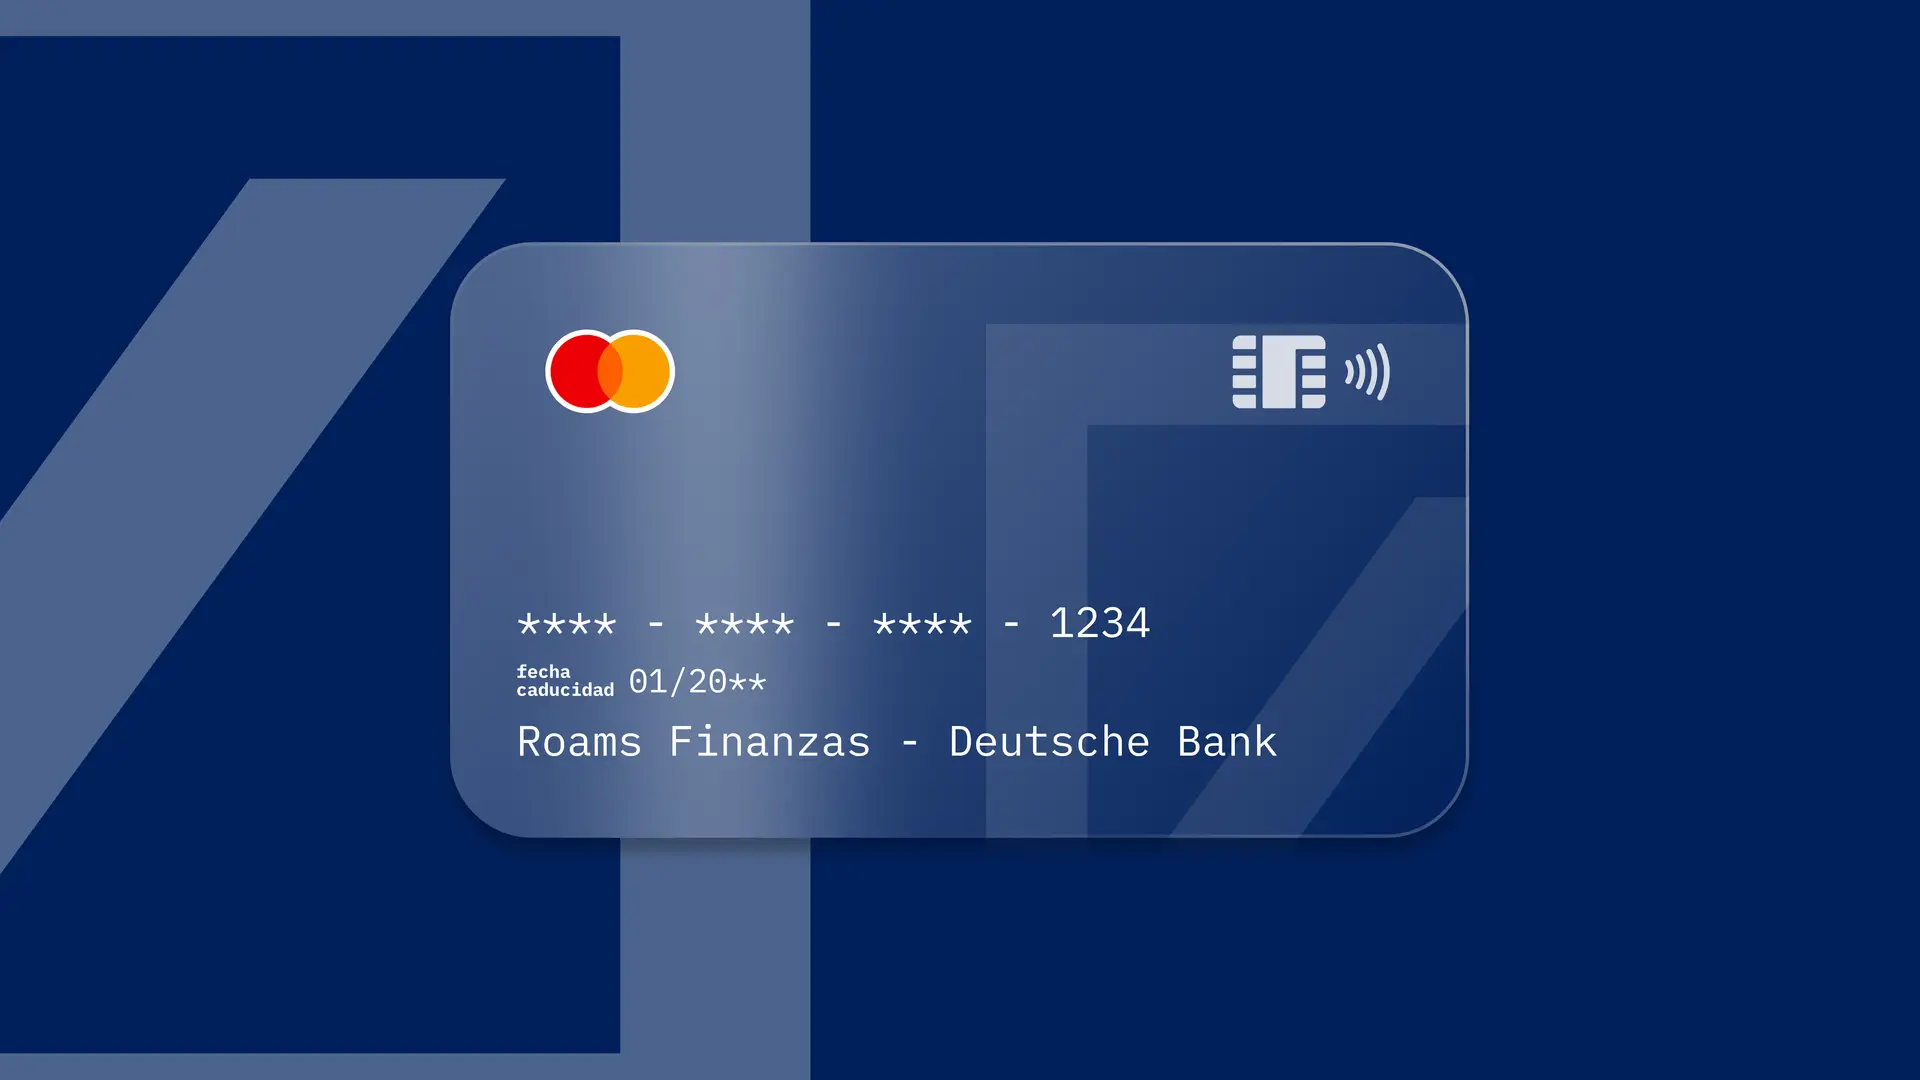 Simulación de una tarjeta de la entidad financiera Deutsche Bank creada por Roams.